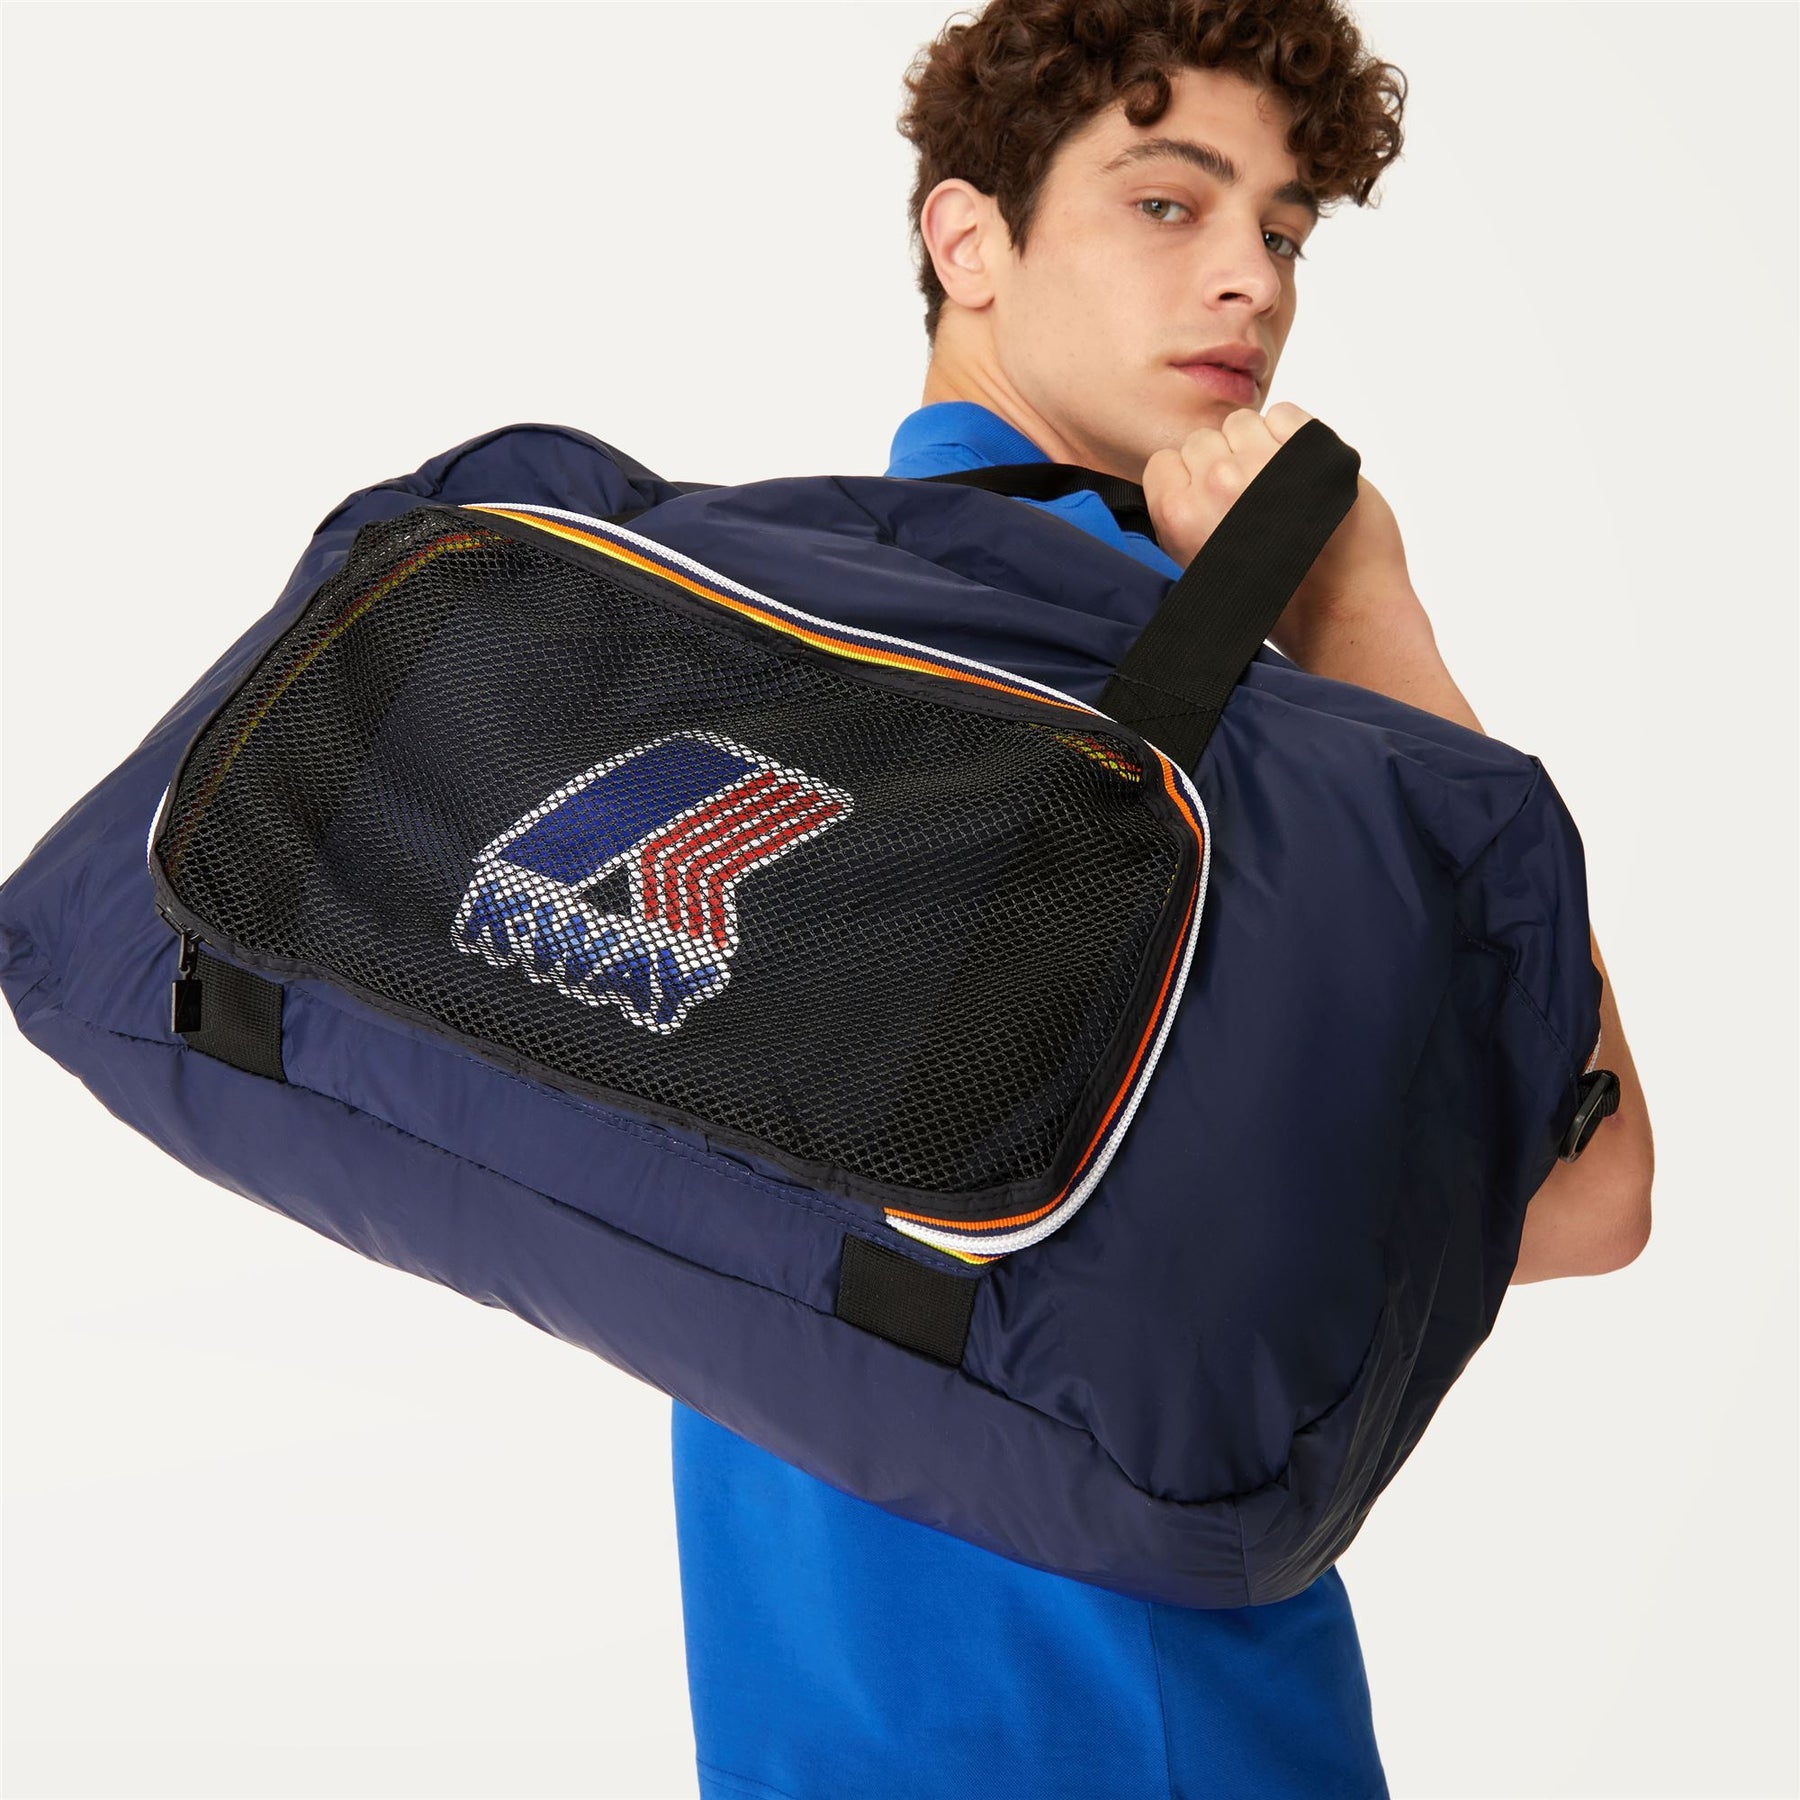 Emilien - Packable Ripstop Duffle Bag in Blue Depht